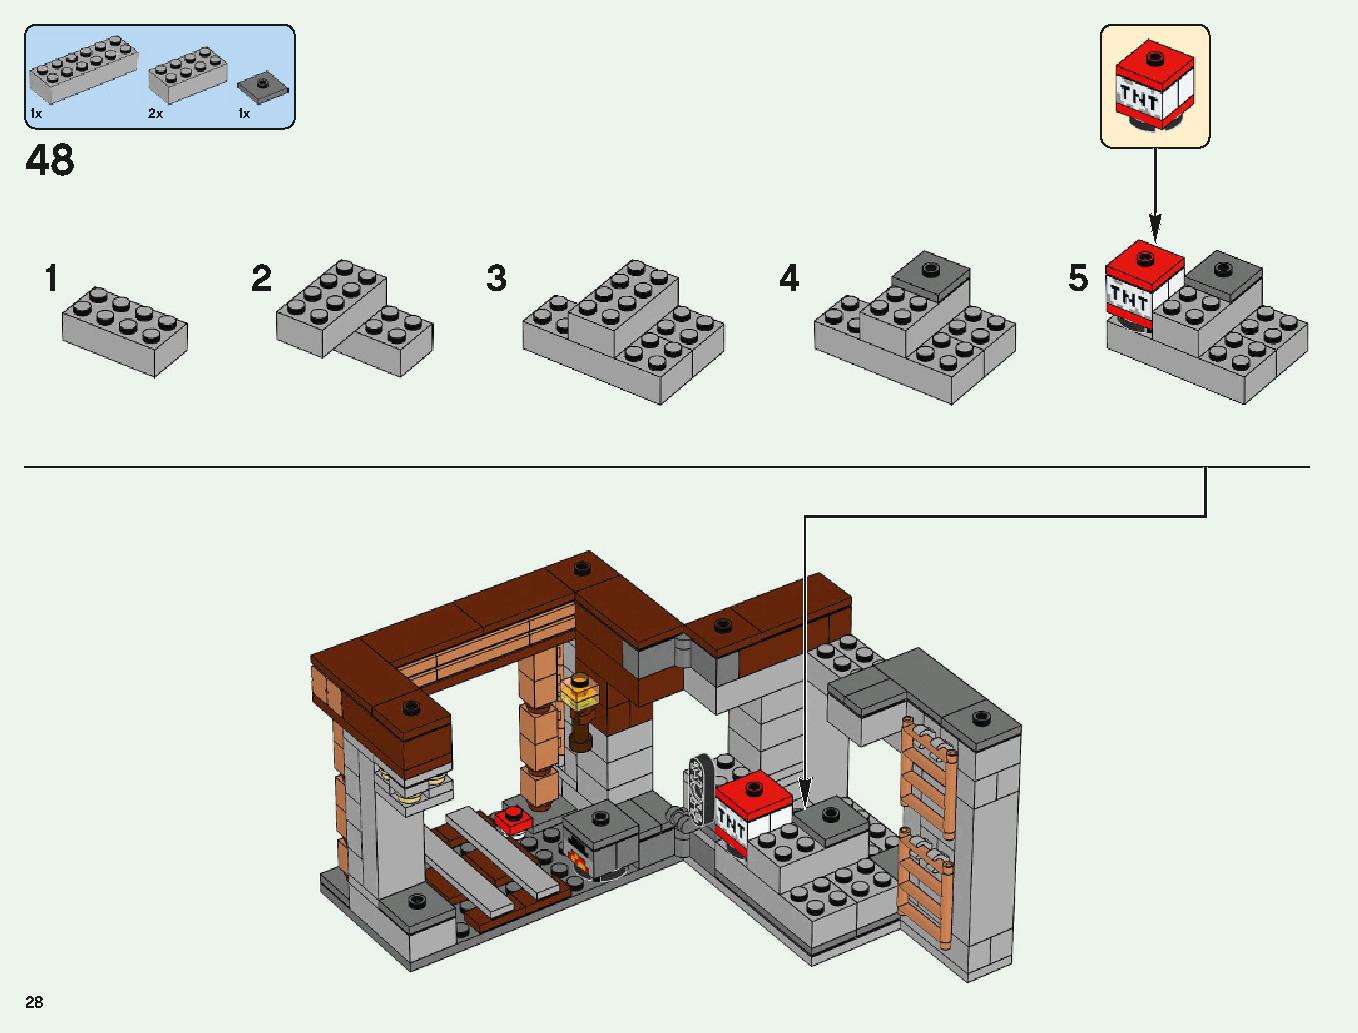 ベッドロックの冒険 21147 レゴの商品情報 レゴの説明書・組立方法 28 page